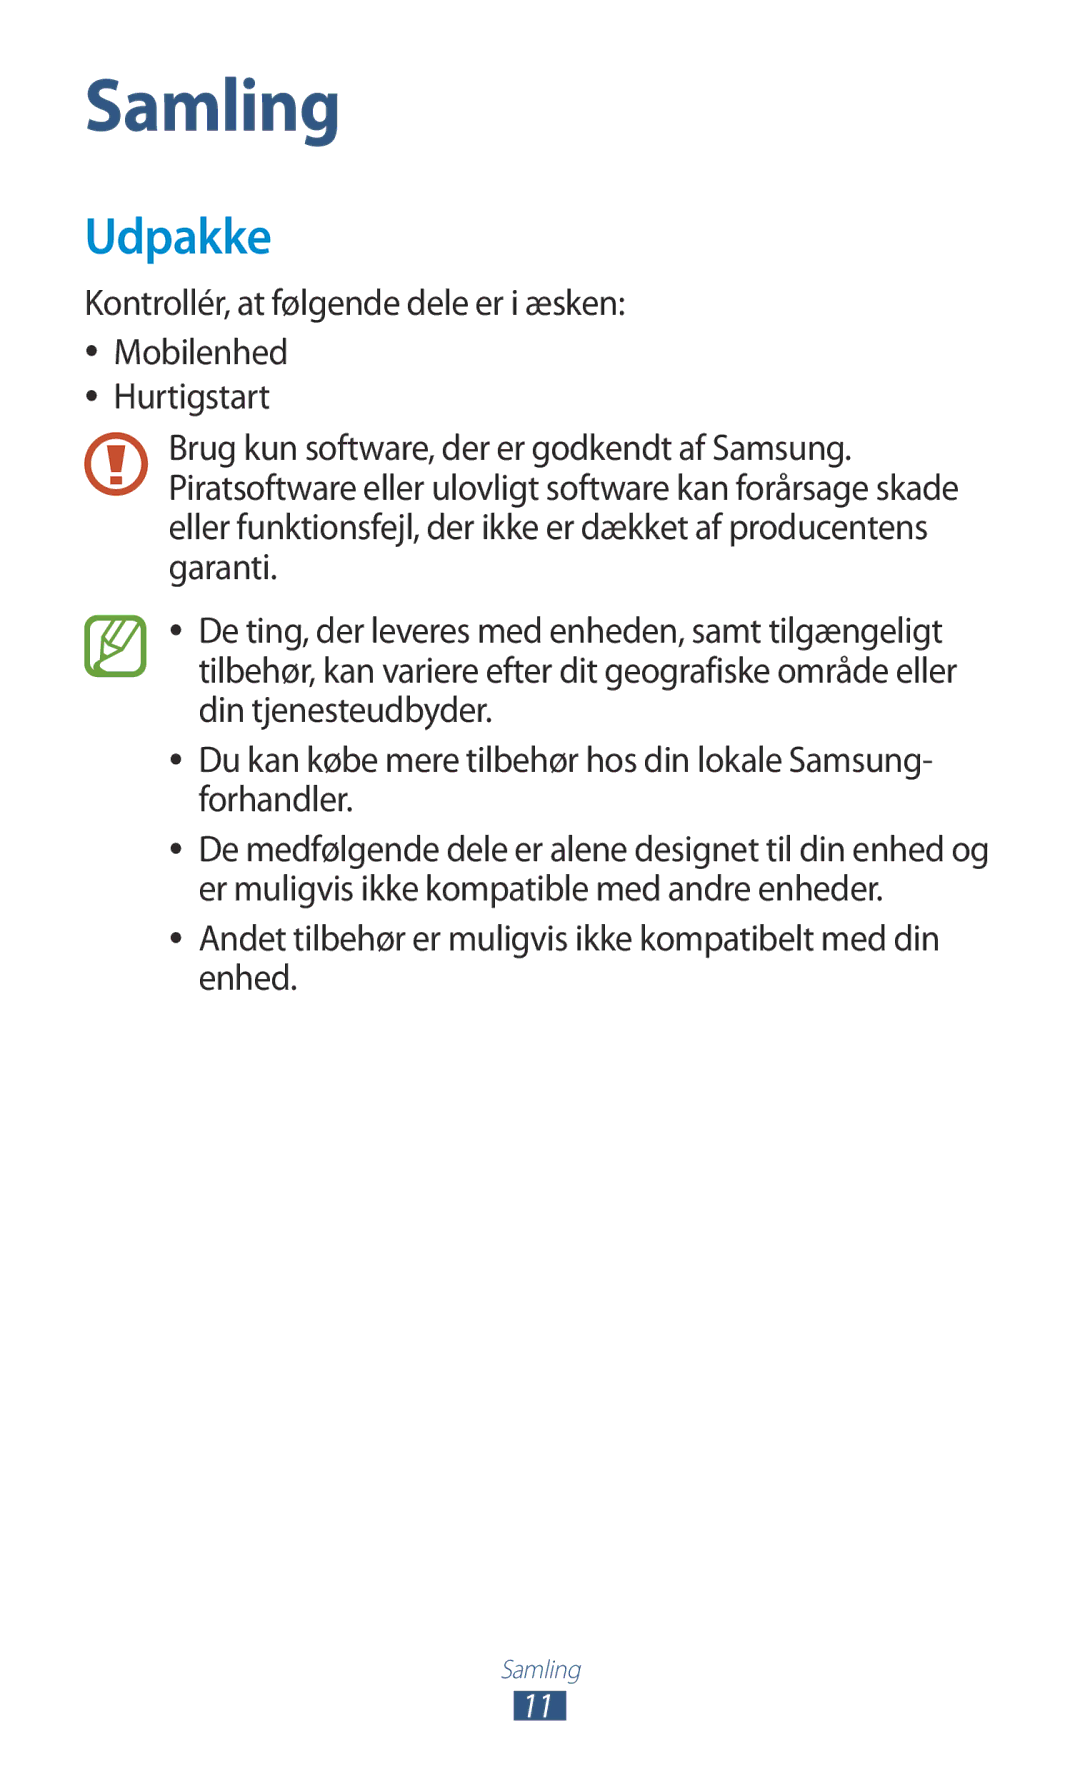 Samsung GT-P5100ZWENEE, GT-P5100GRANEE, GT-P5100ZWANEE Udpakke, Andet tilbehør er muligvis ikke kompatibelt med din enhed 